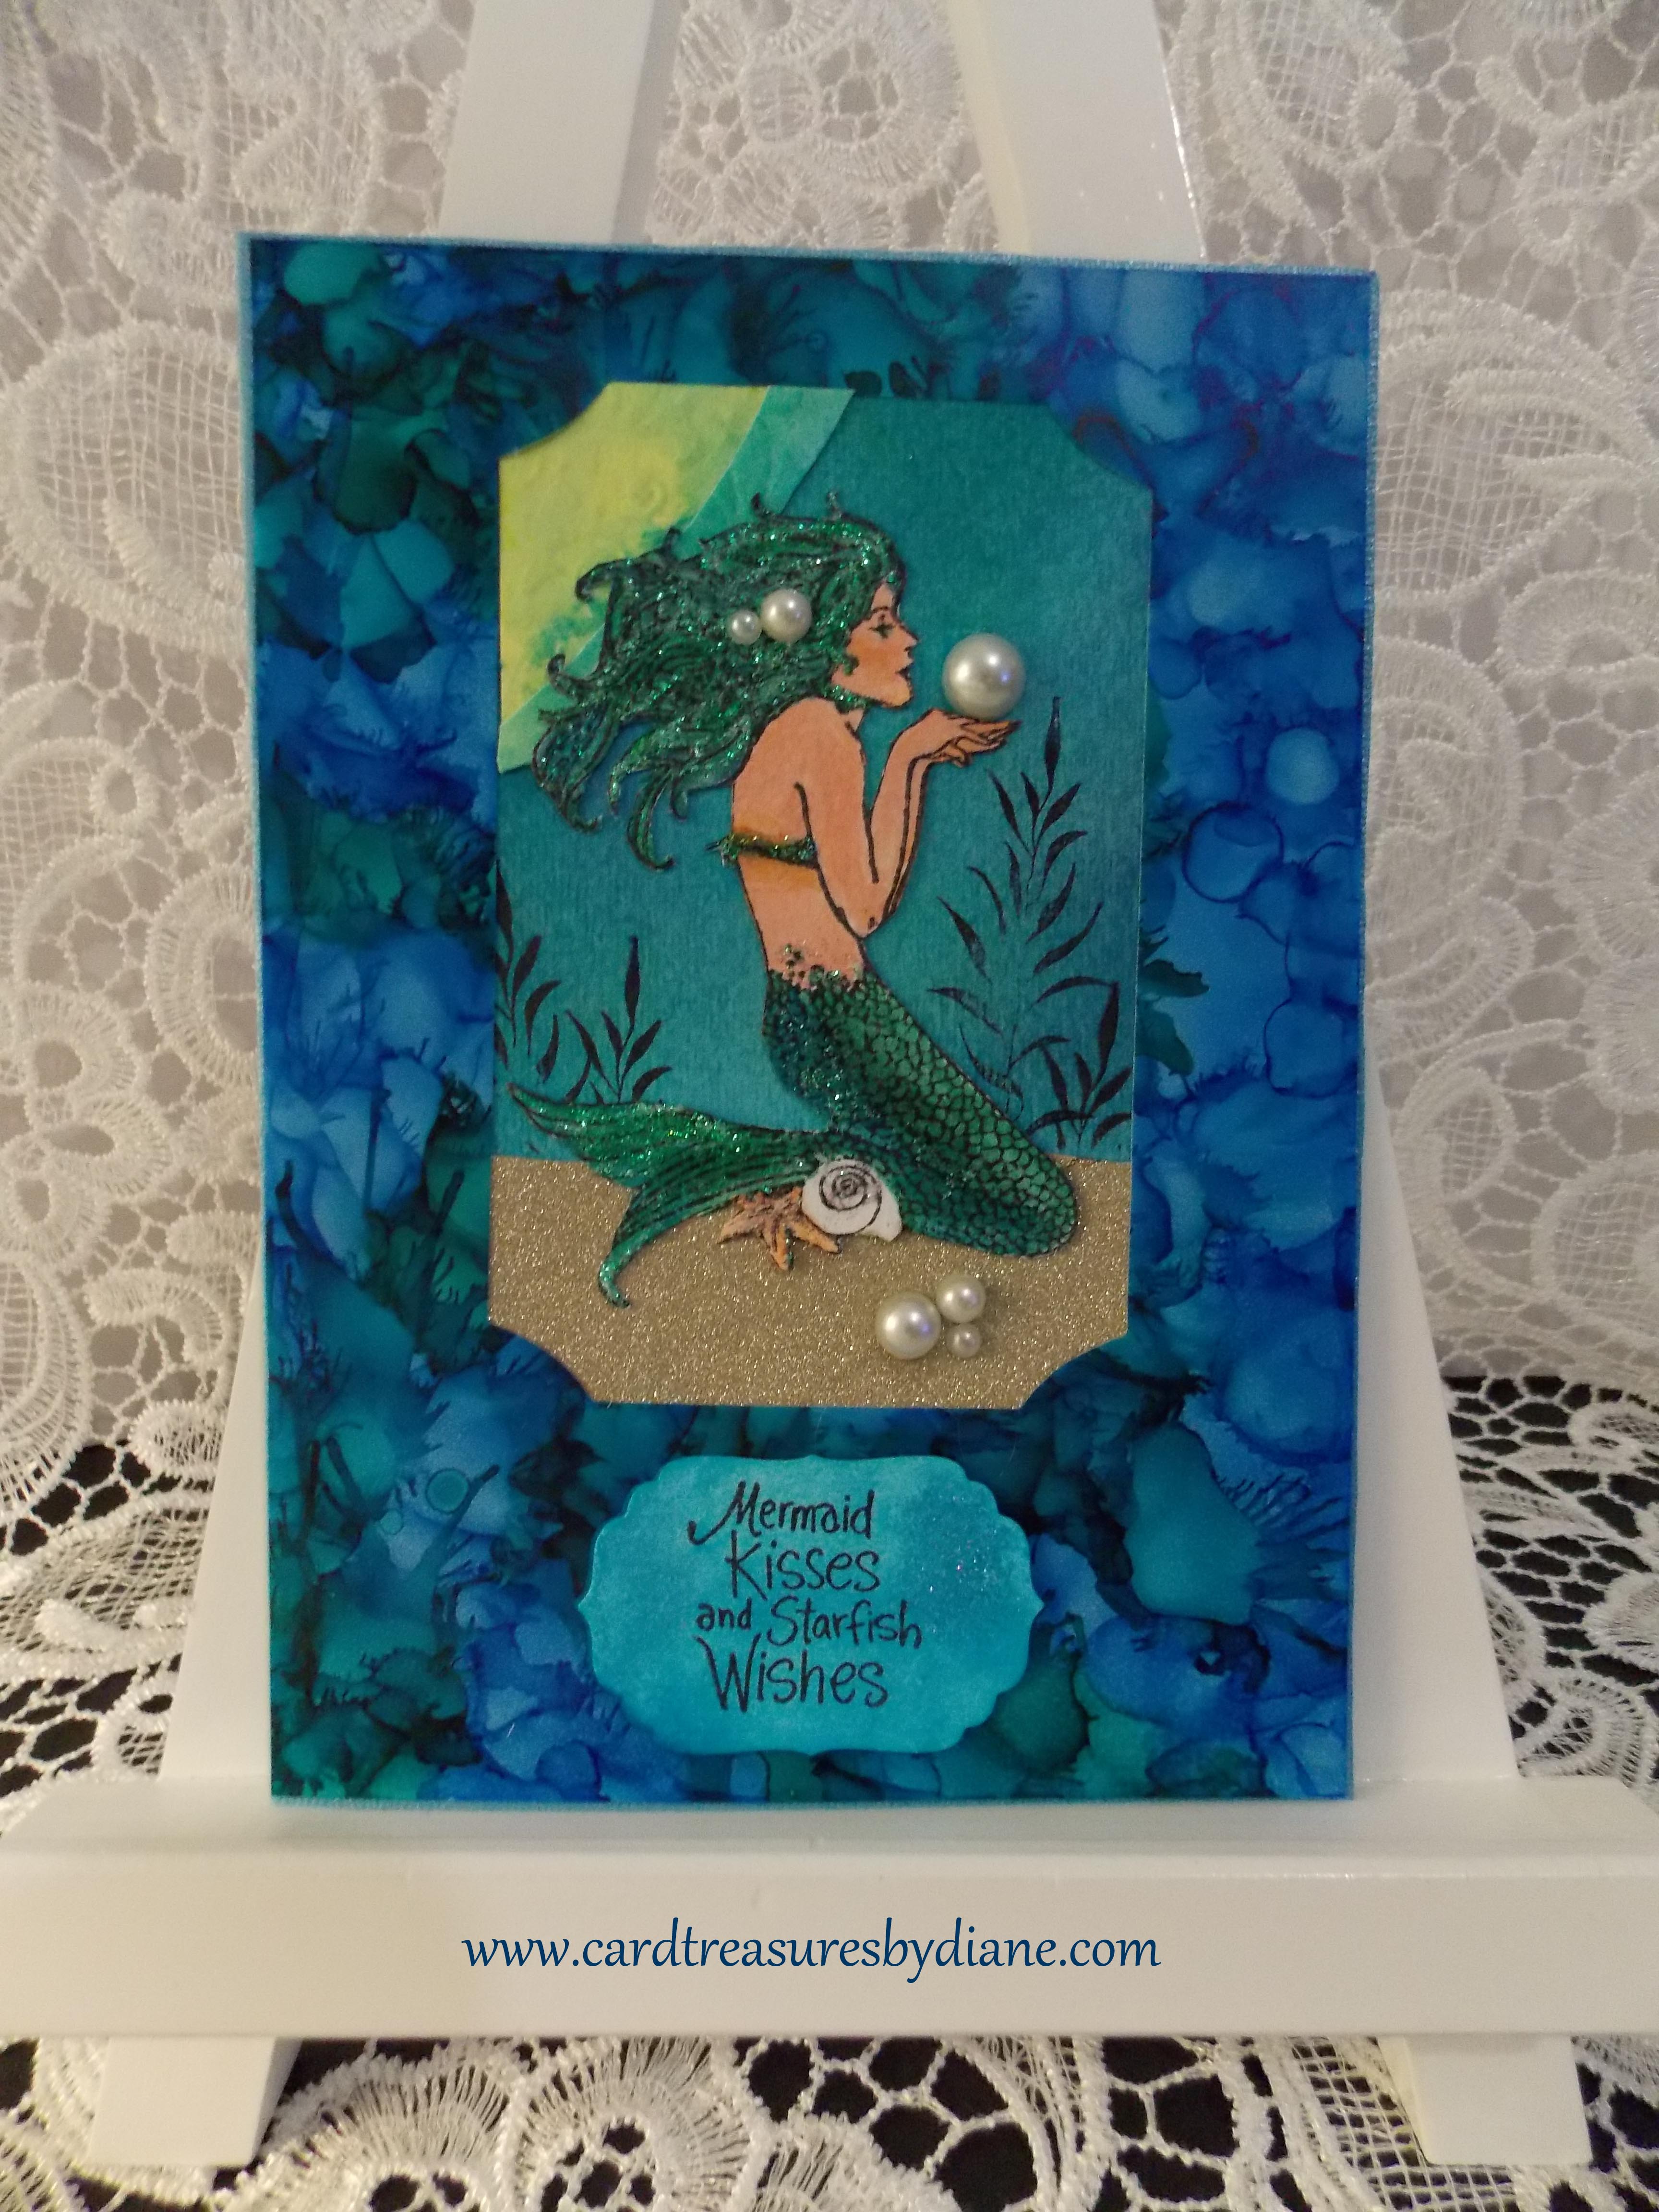 mermaid-kisses-card-treasures-by-diane